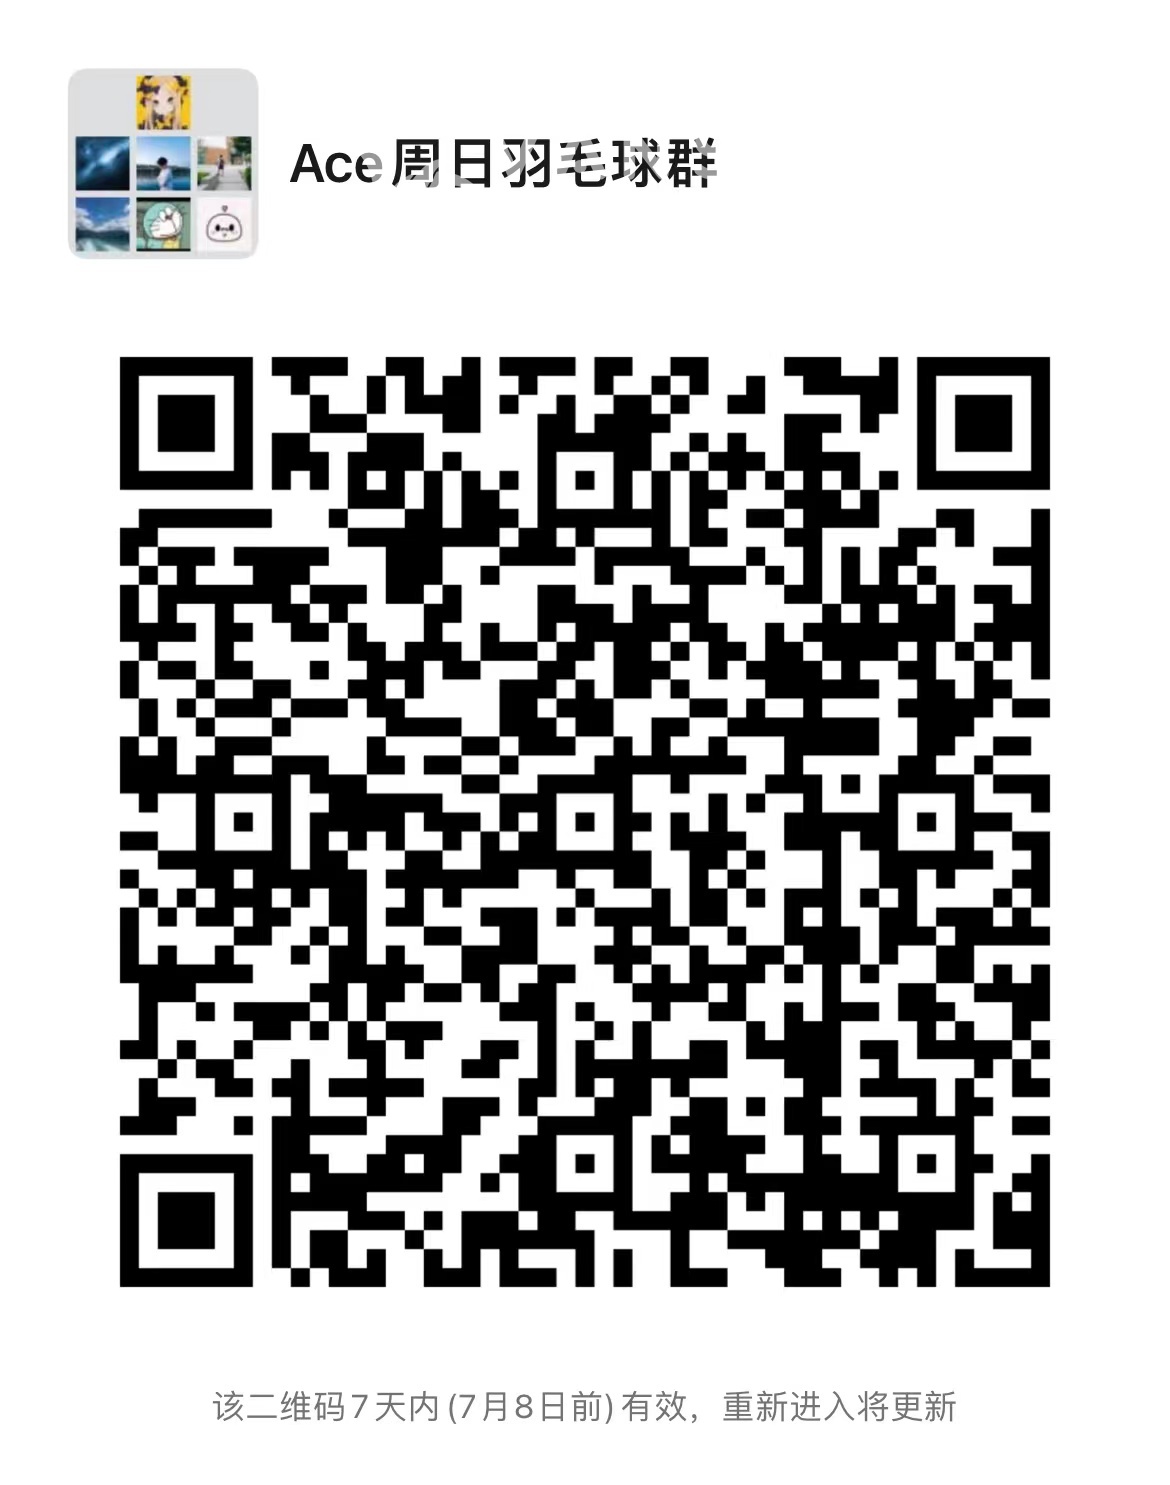 220701020308_WeChat Image_20220701020052.jpg